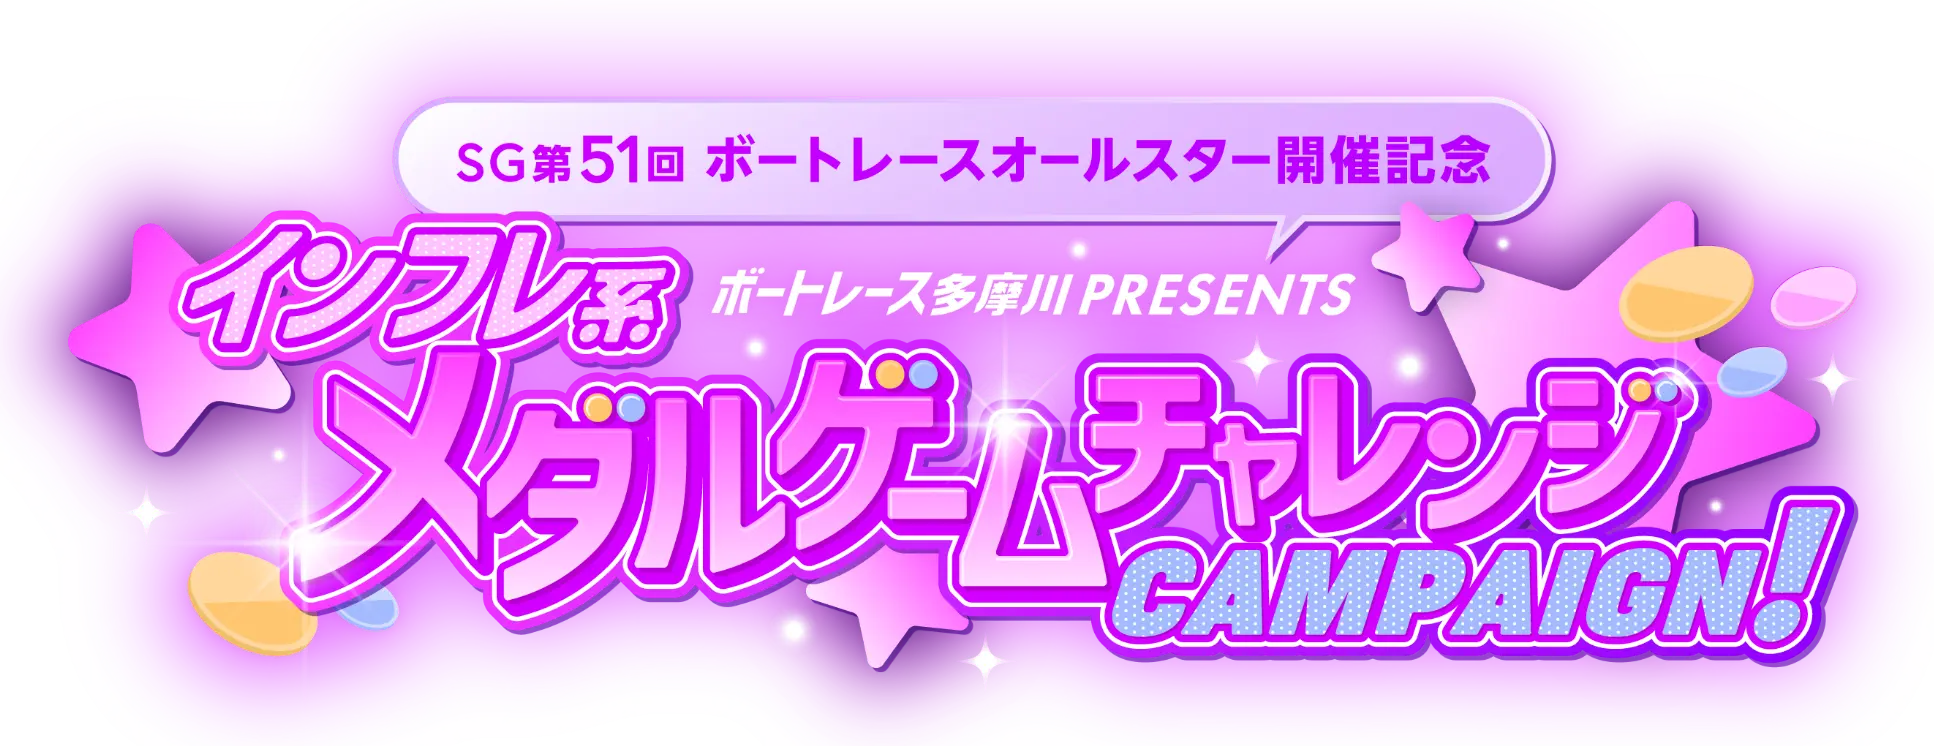 ボートレース多摩川presents メダルゲームチャレンジCAMPAIGN!